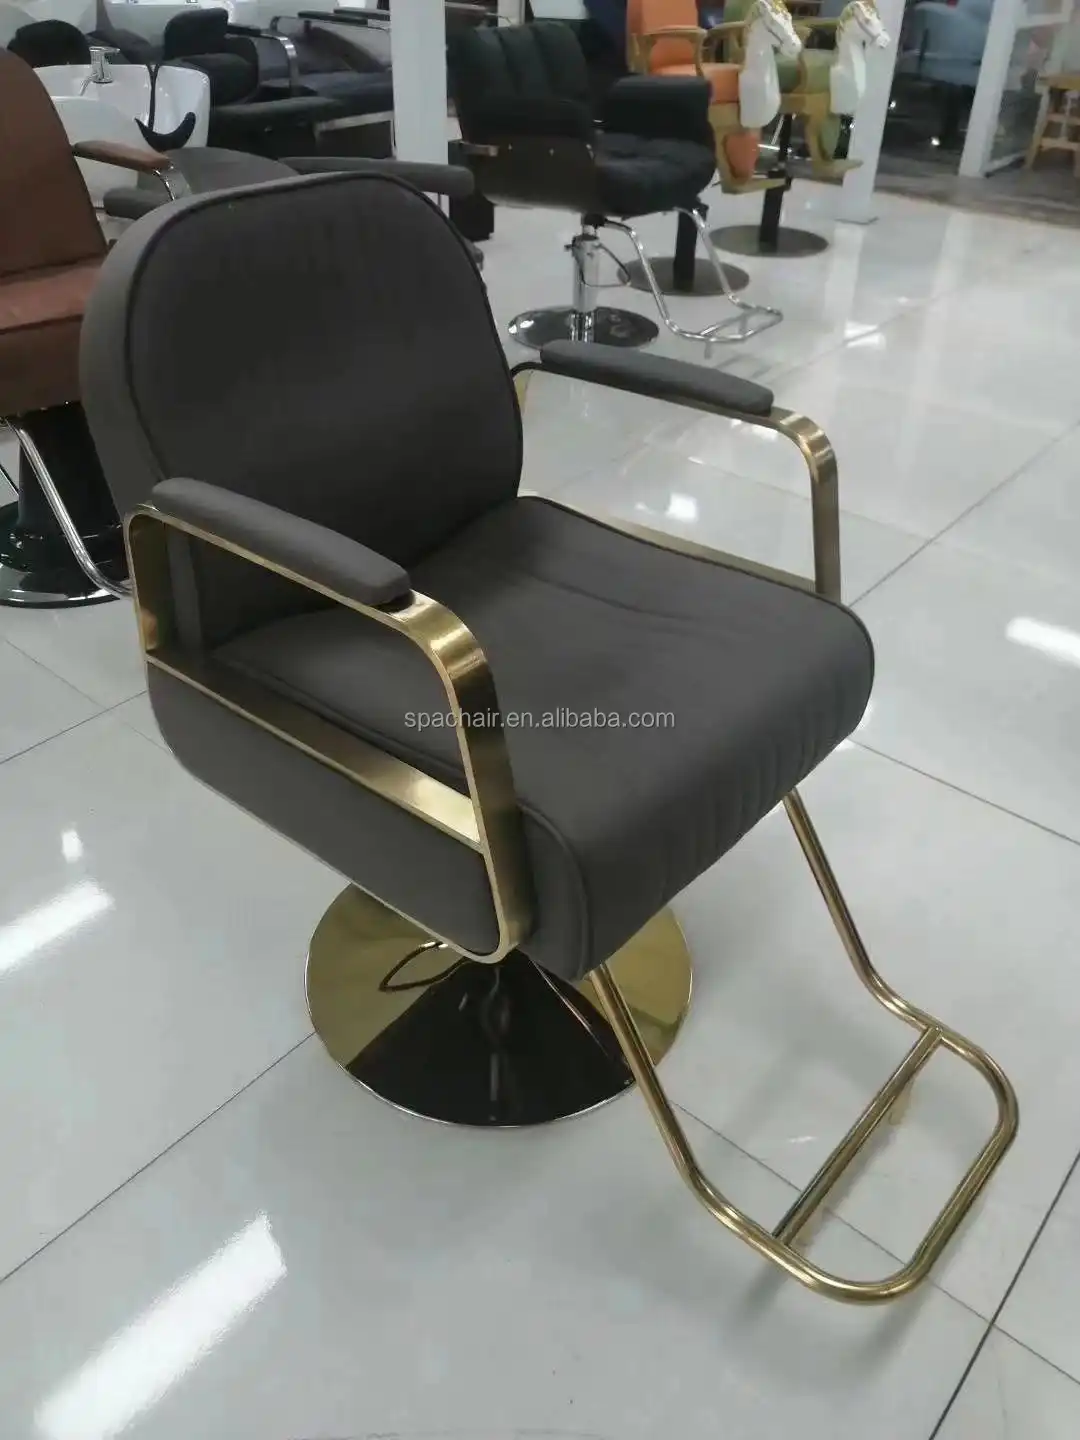 Düşük fiyat modern saç salonu mobilyası berber sandalyeleri salon mobilyaları, foshan fabrika imalatı berber koltuğu